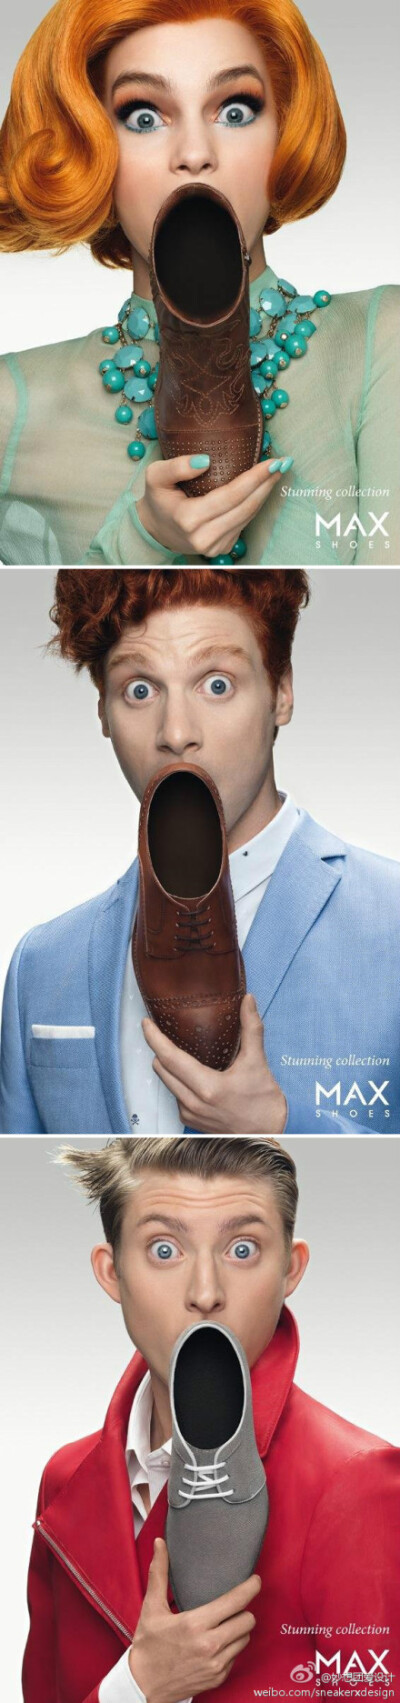 【每日广告】MAX Shoe，好到让你震惊。